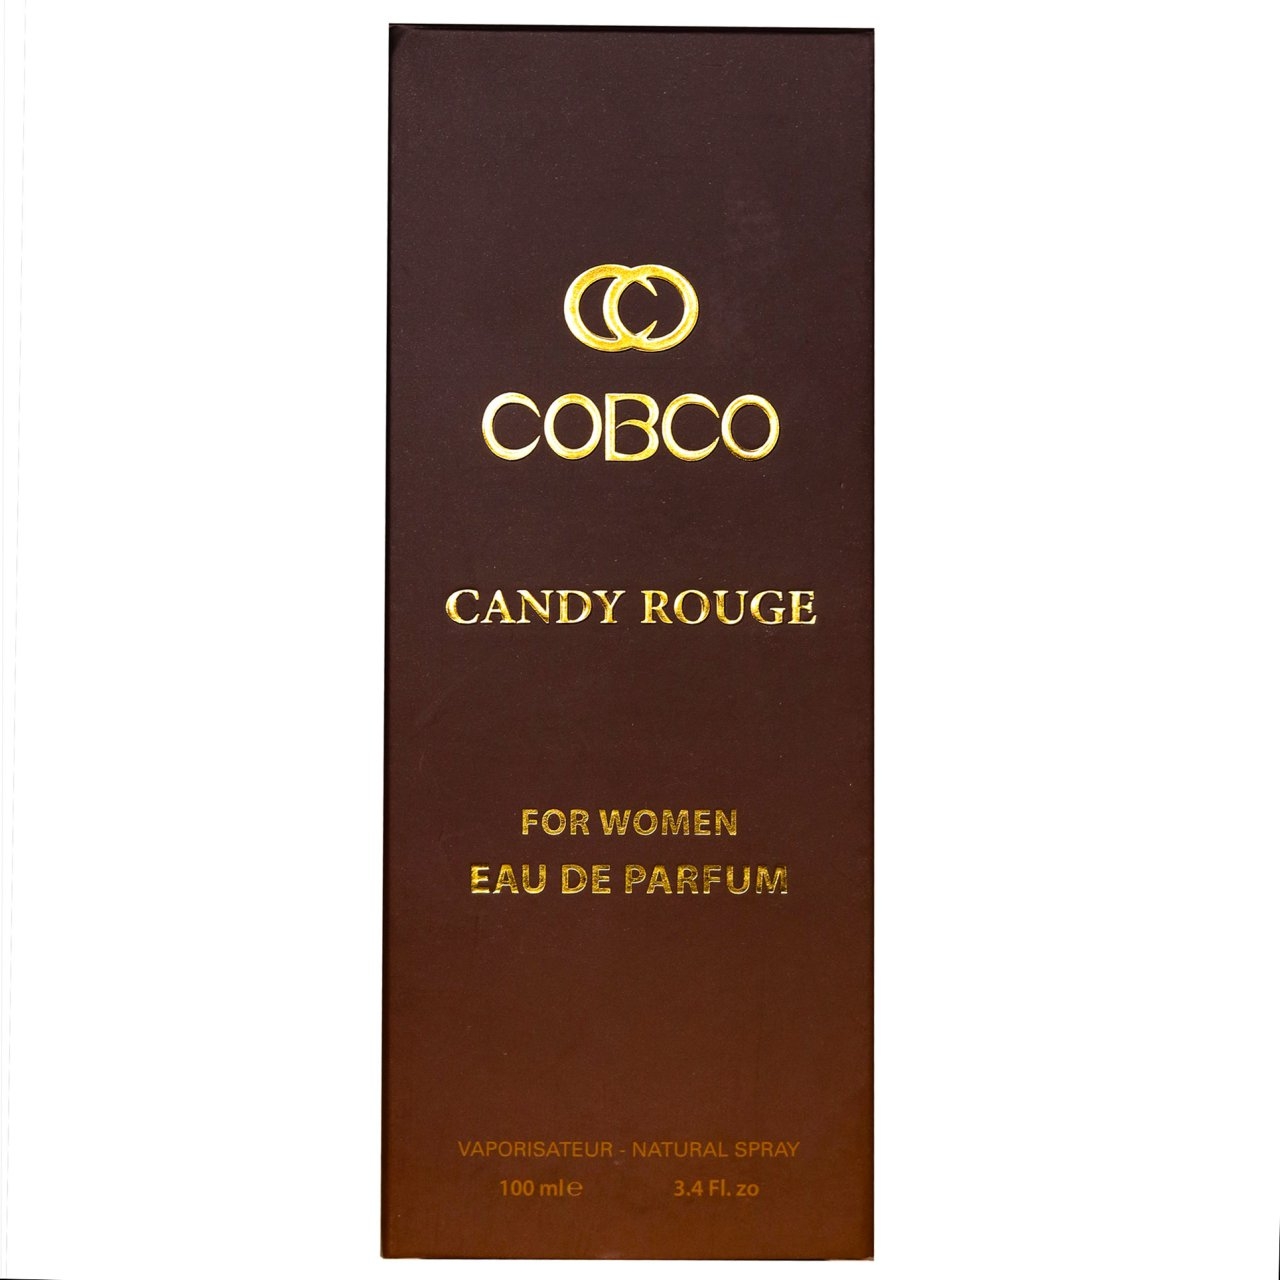 ادو پرفیوم زنانه کوبکو  مدل Candy rouge حجم 100 میلی لیتر